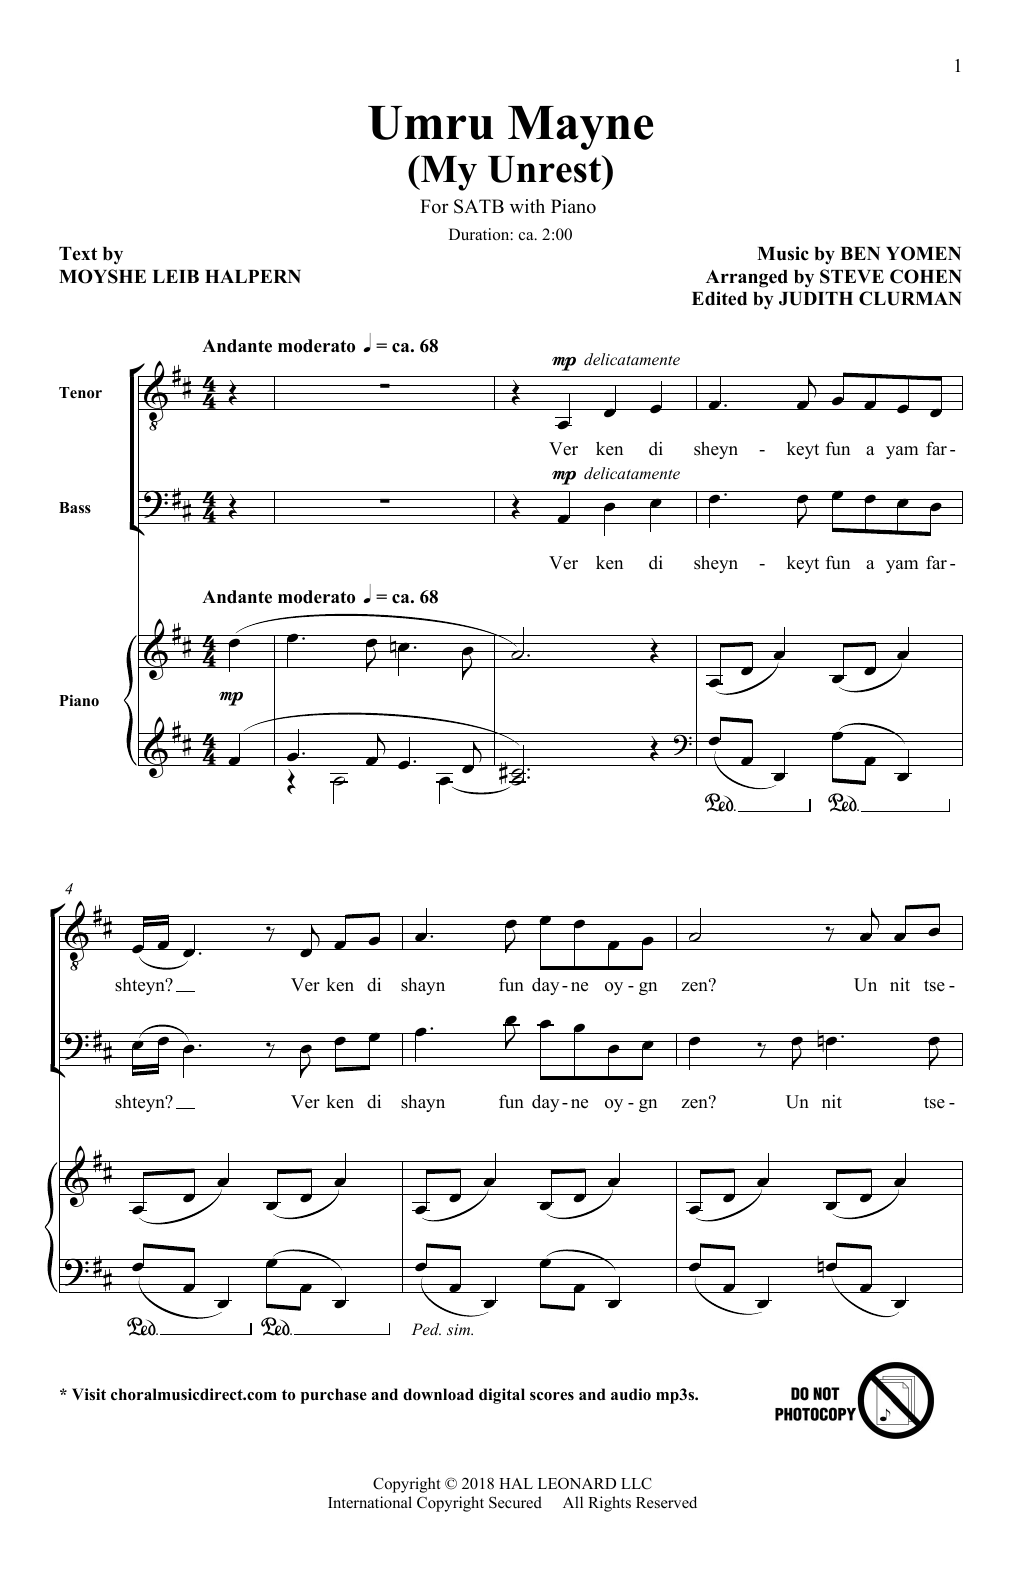 Ben Yomen Umru Mayne (My Unrest) (arr. Steve Cohen) Sheet Music Notes & Chords for SATB Choir - Download or Print PDF